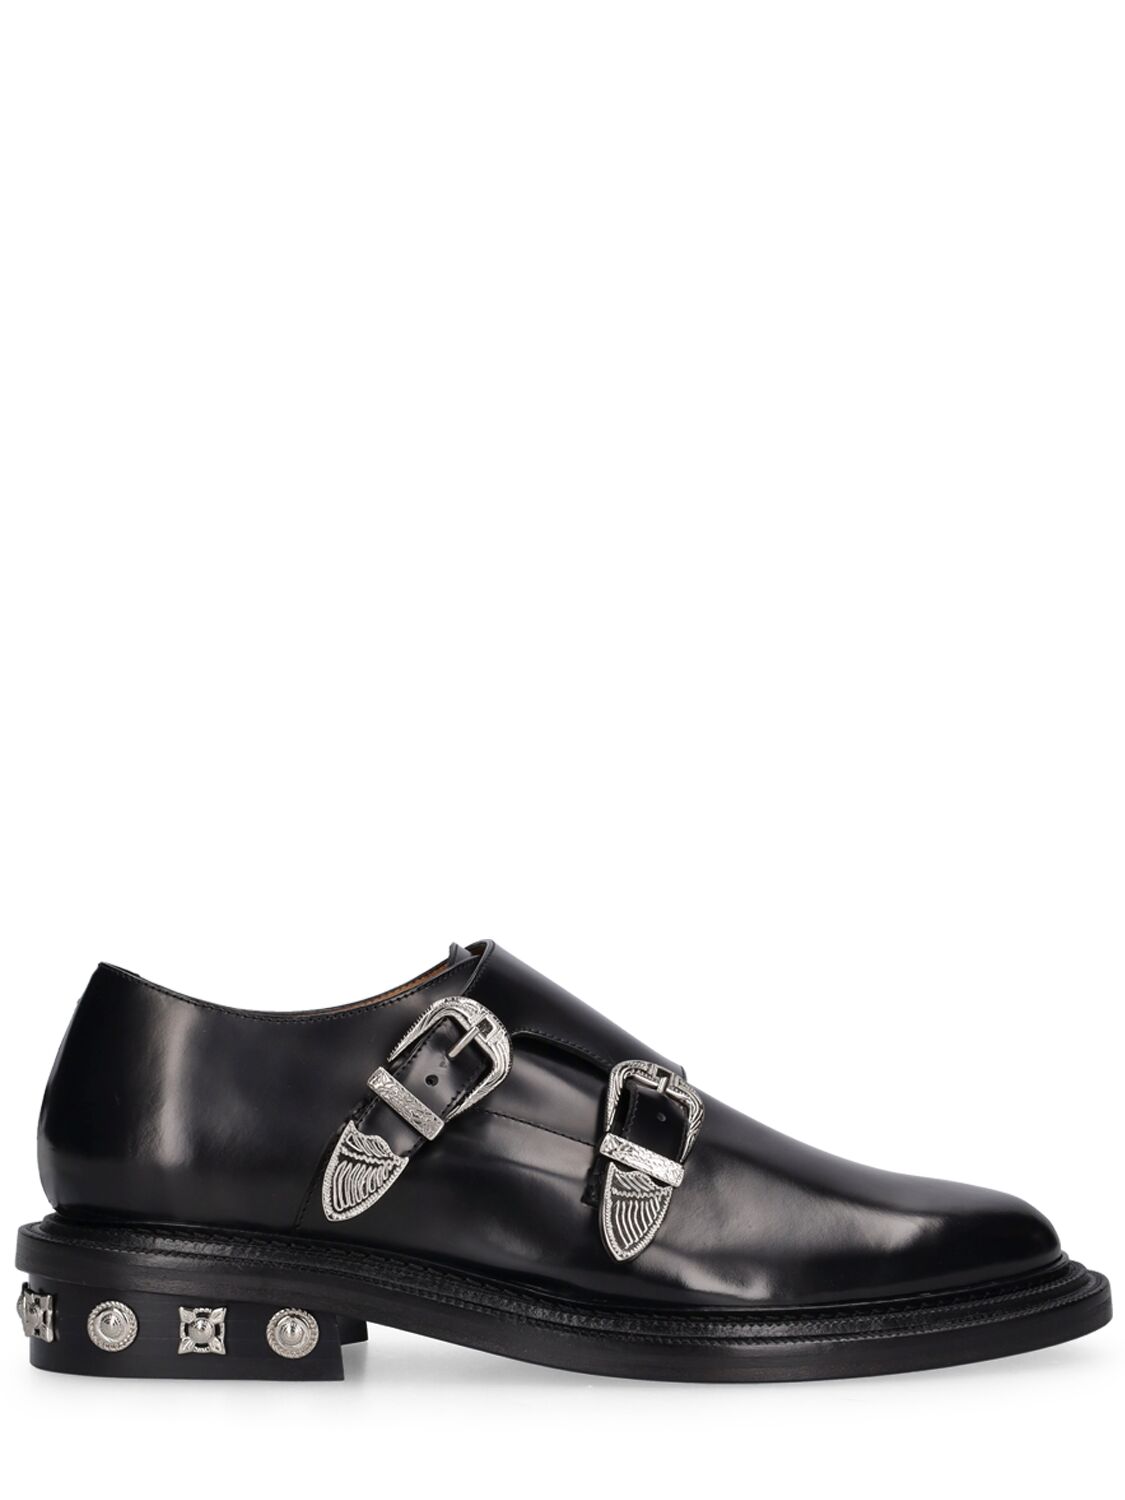 Toga Virilis Black Polido Leather Shoes